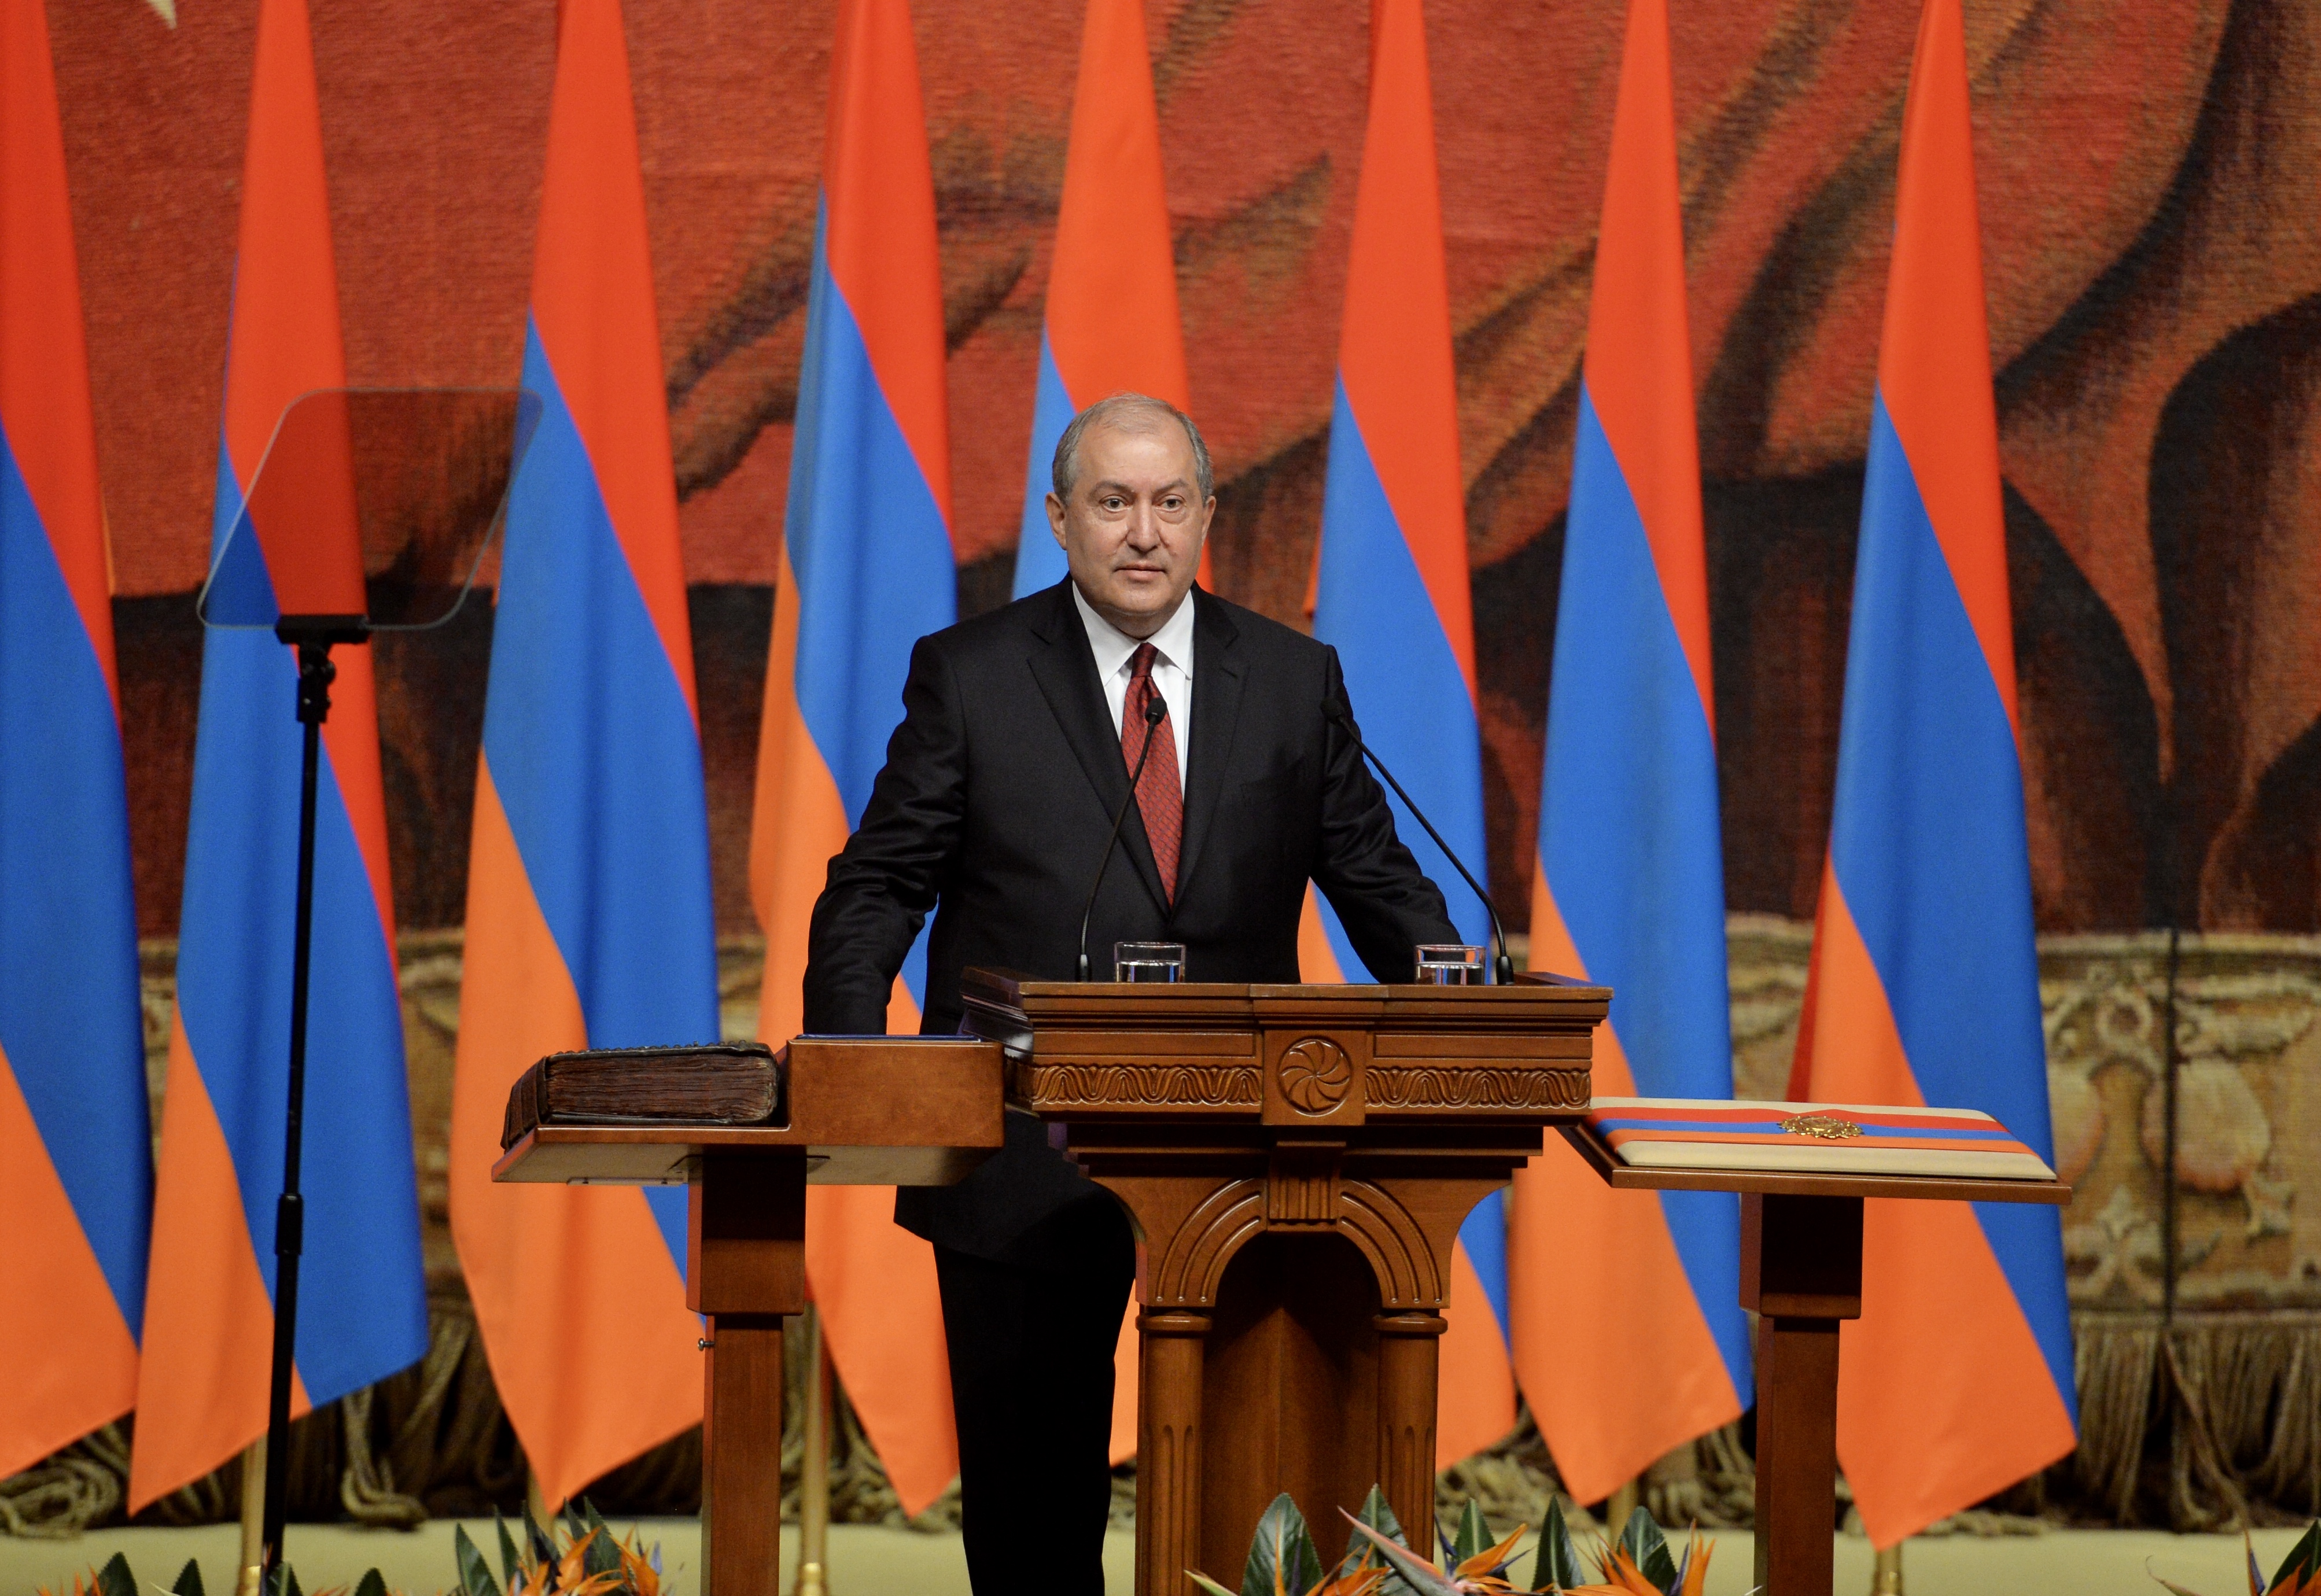 Հայաստանն ունի արարողակարգային եւ քիչ լիազորություններով նոր նախագահ․ միջազգային մամուլ